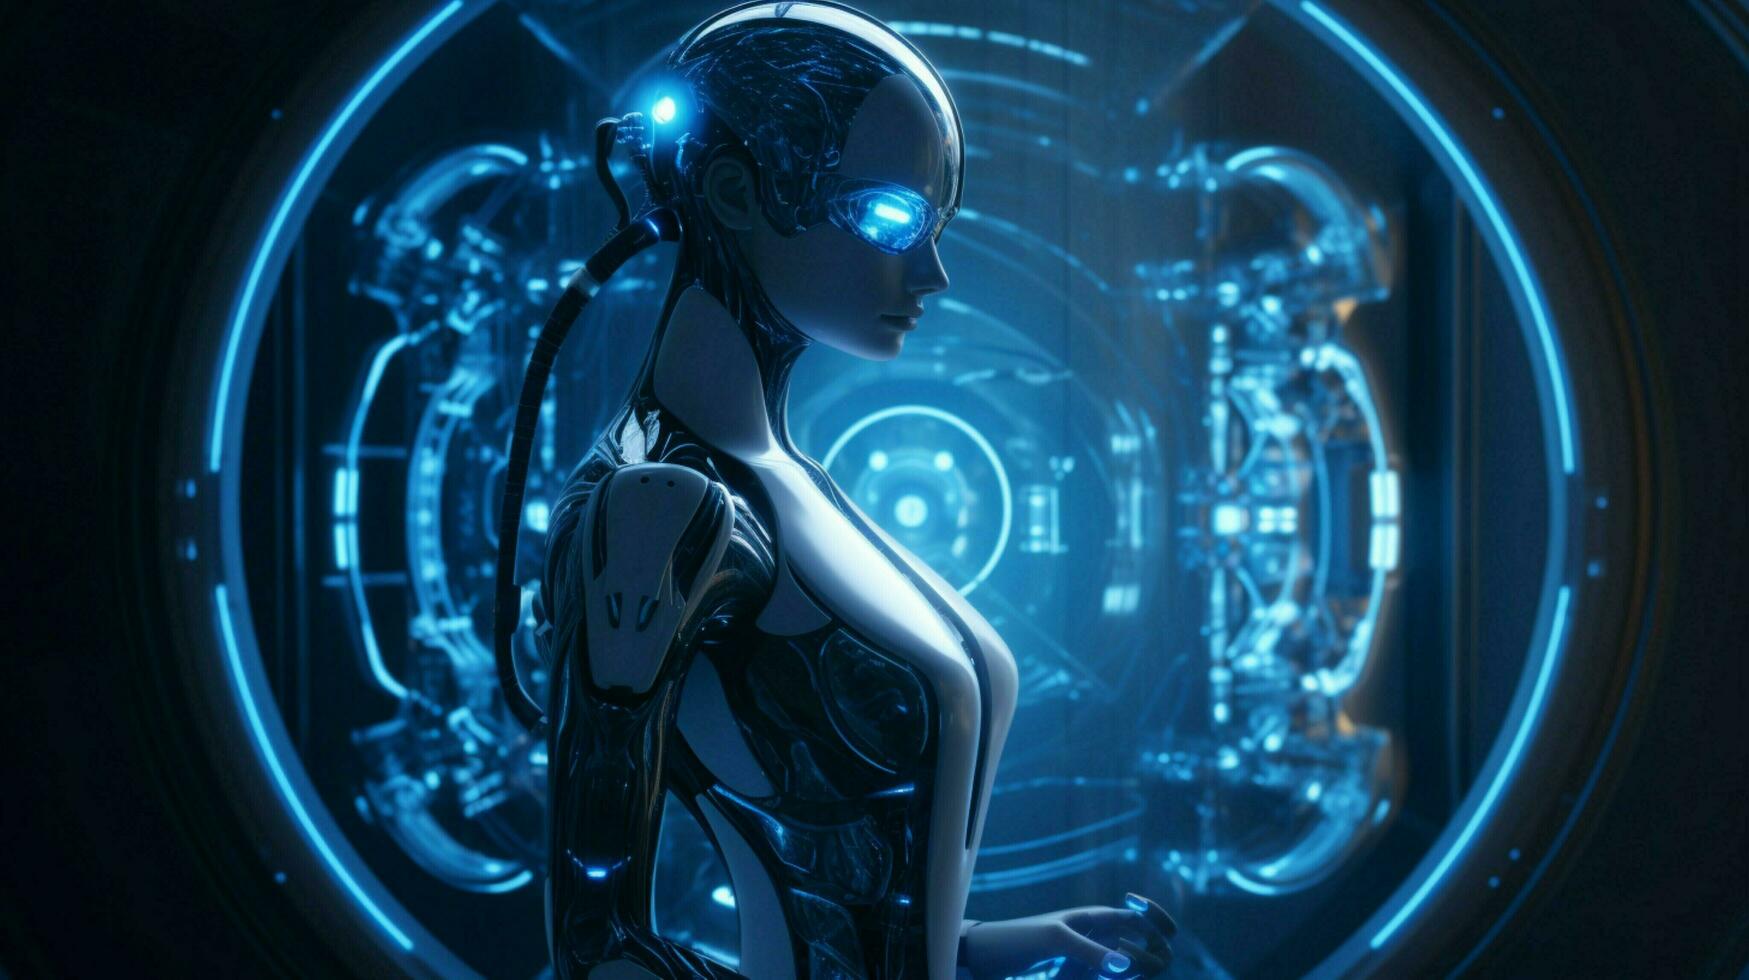 standing futuristic cyborg illuminated by blue machinery photo